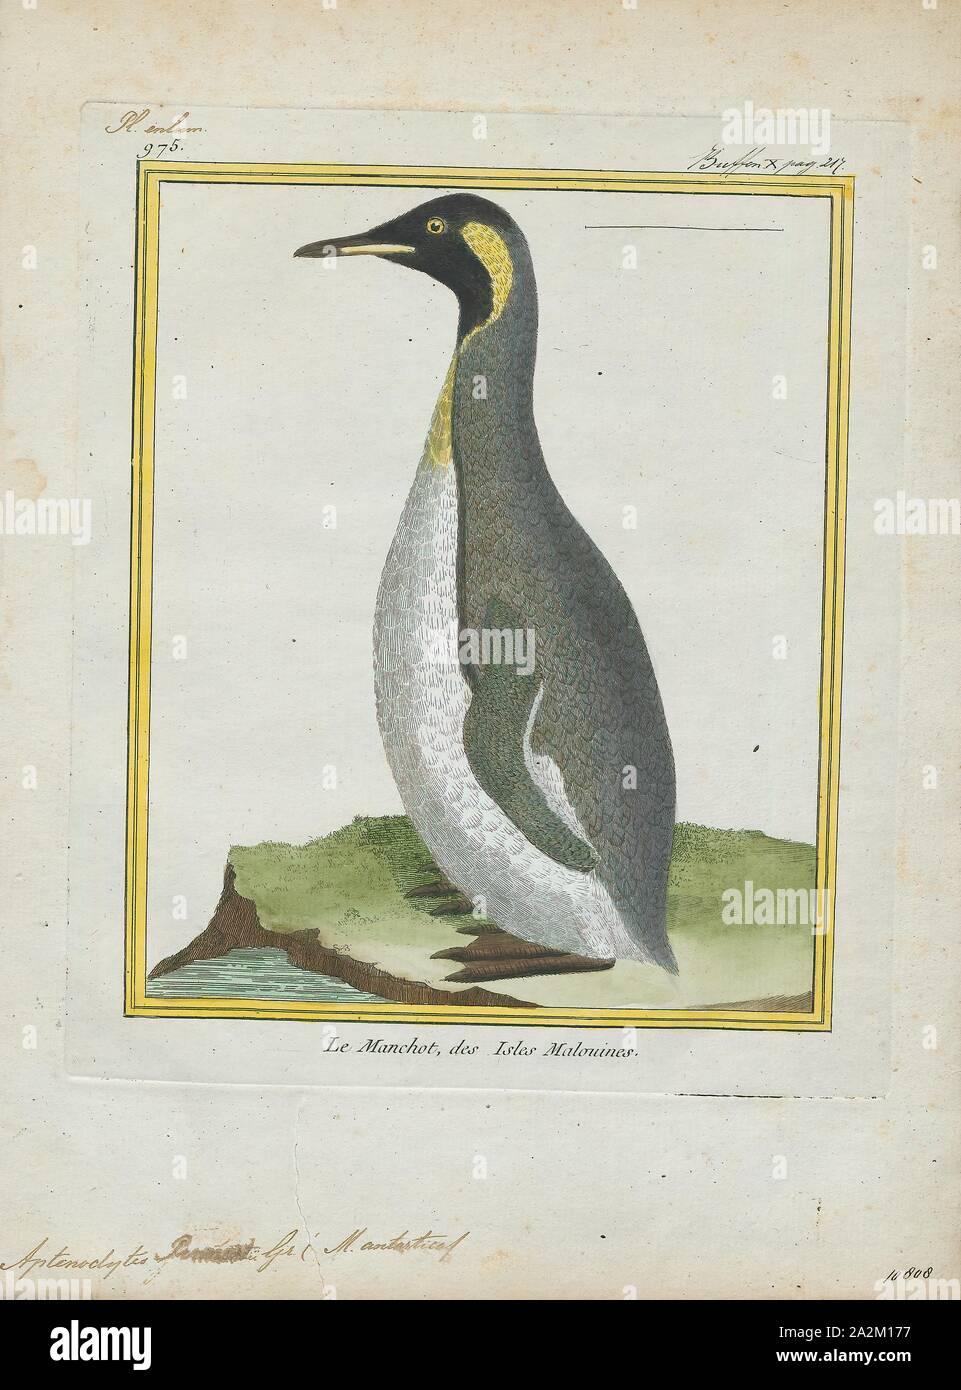 Pennantii Aptenodytes, Ausdrucken, die Gattung Aptenodytes enthält zwei bestehenden Arten der Pinguine gemeinsam bekannt als "der große Pinguine., 1700-1880 Stockfoto